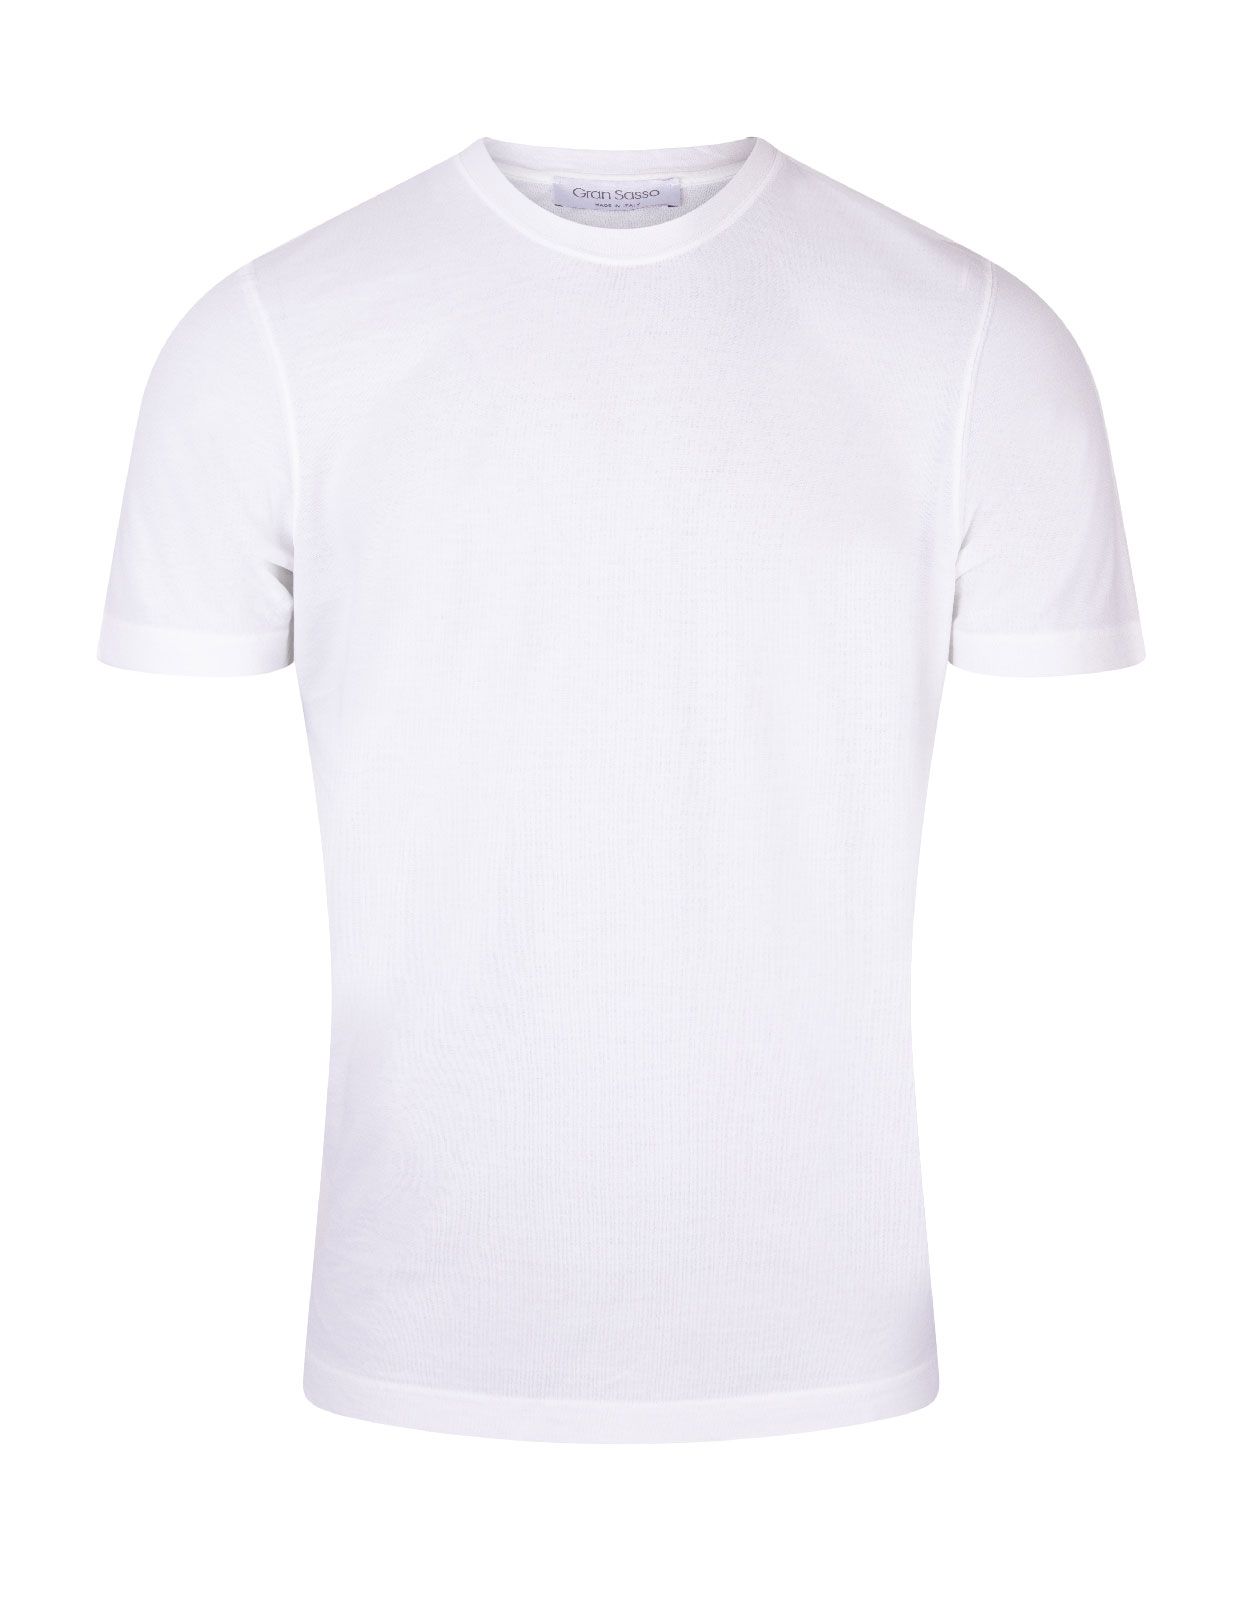 T-shirt Cotton Crew Neck White